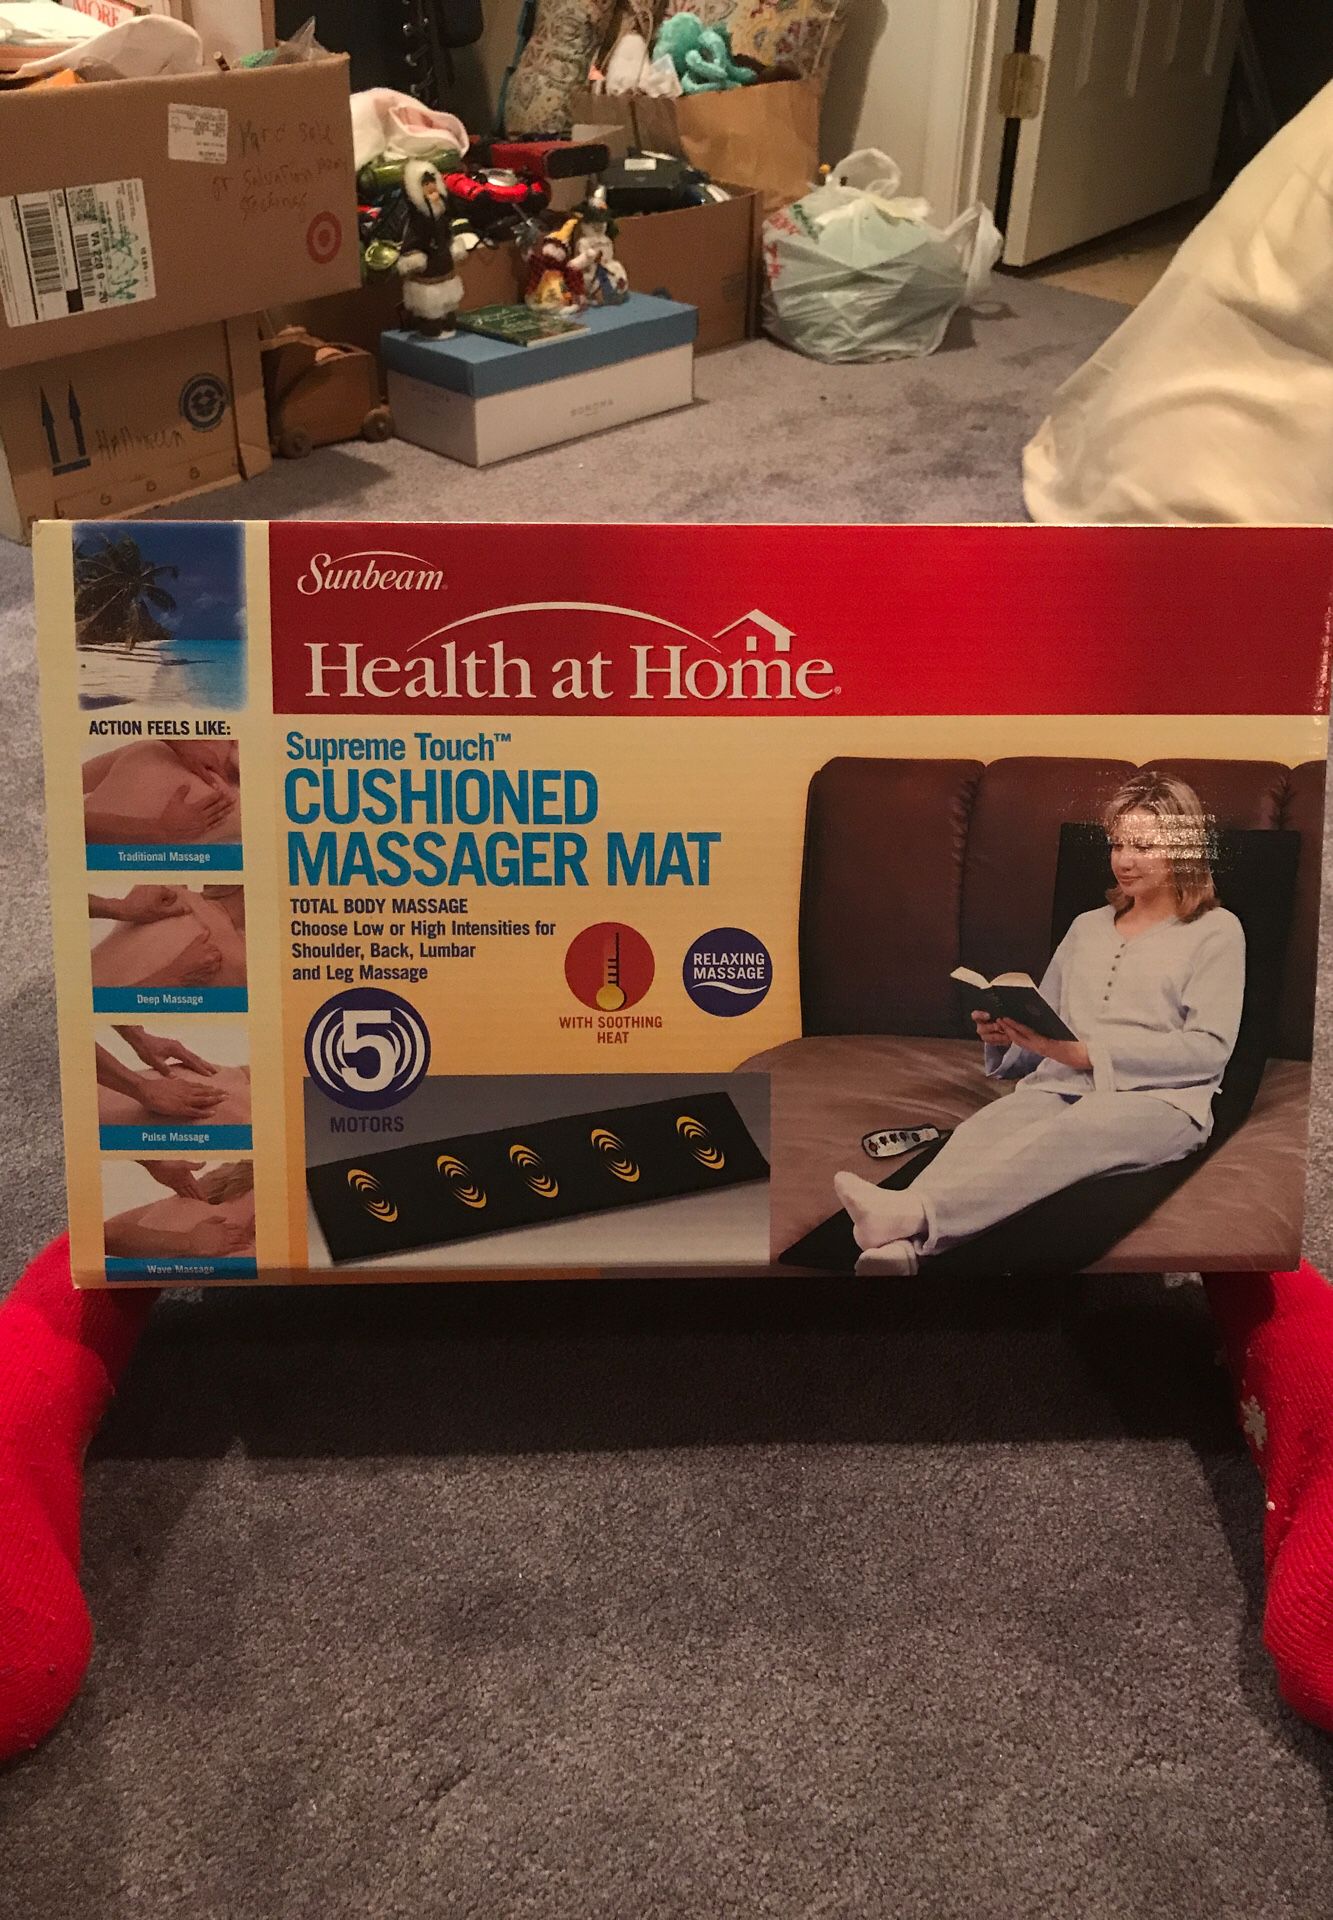 Cushioned massager mat